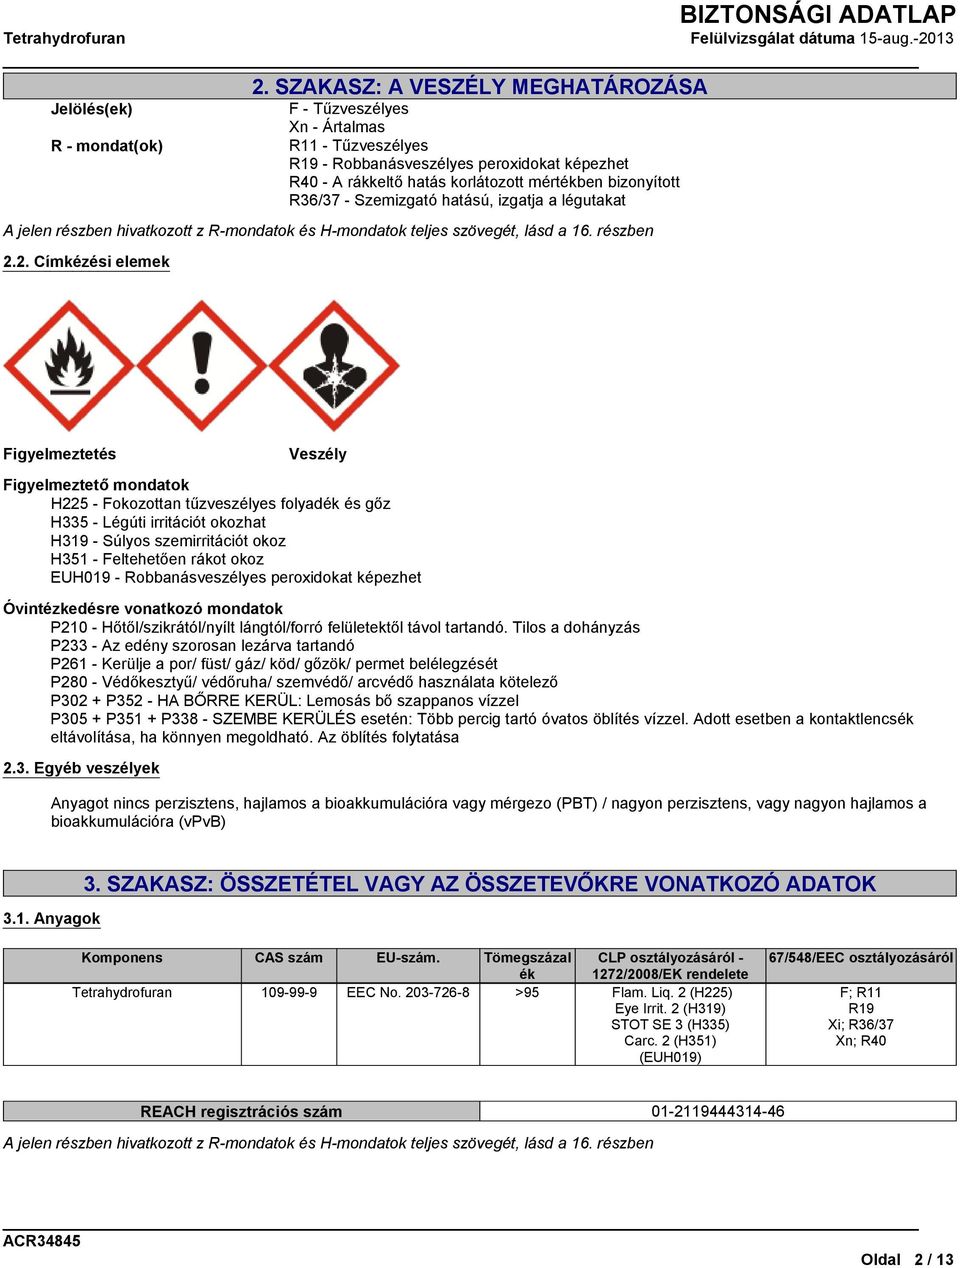 2. Címkézési elemek Figyelmeztetés Veszély Figyelmeztető mondatok H225 - Fokozottan tűzveszélyes folyadék és gőz H335 - Légúti irritációt okozhat H319 - Súlyos szemirritációt okoz H351 - Feltehetően